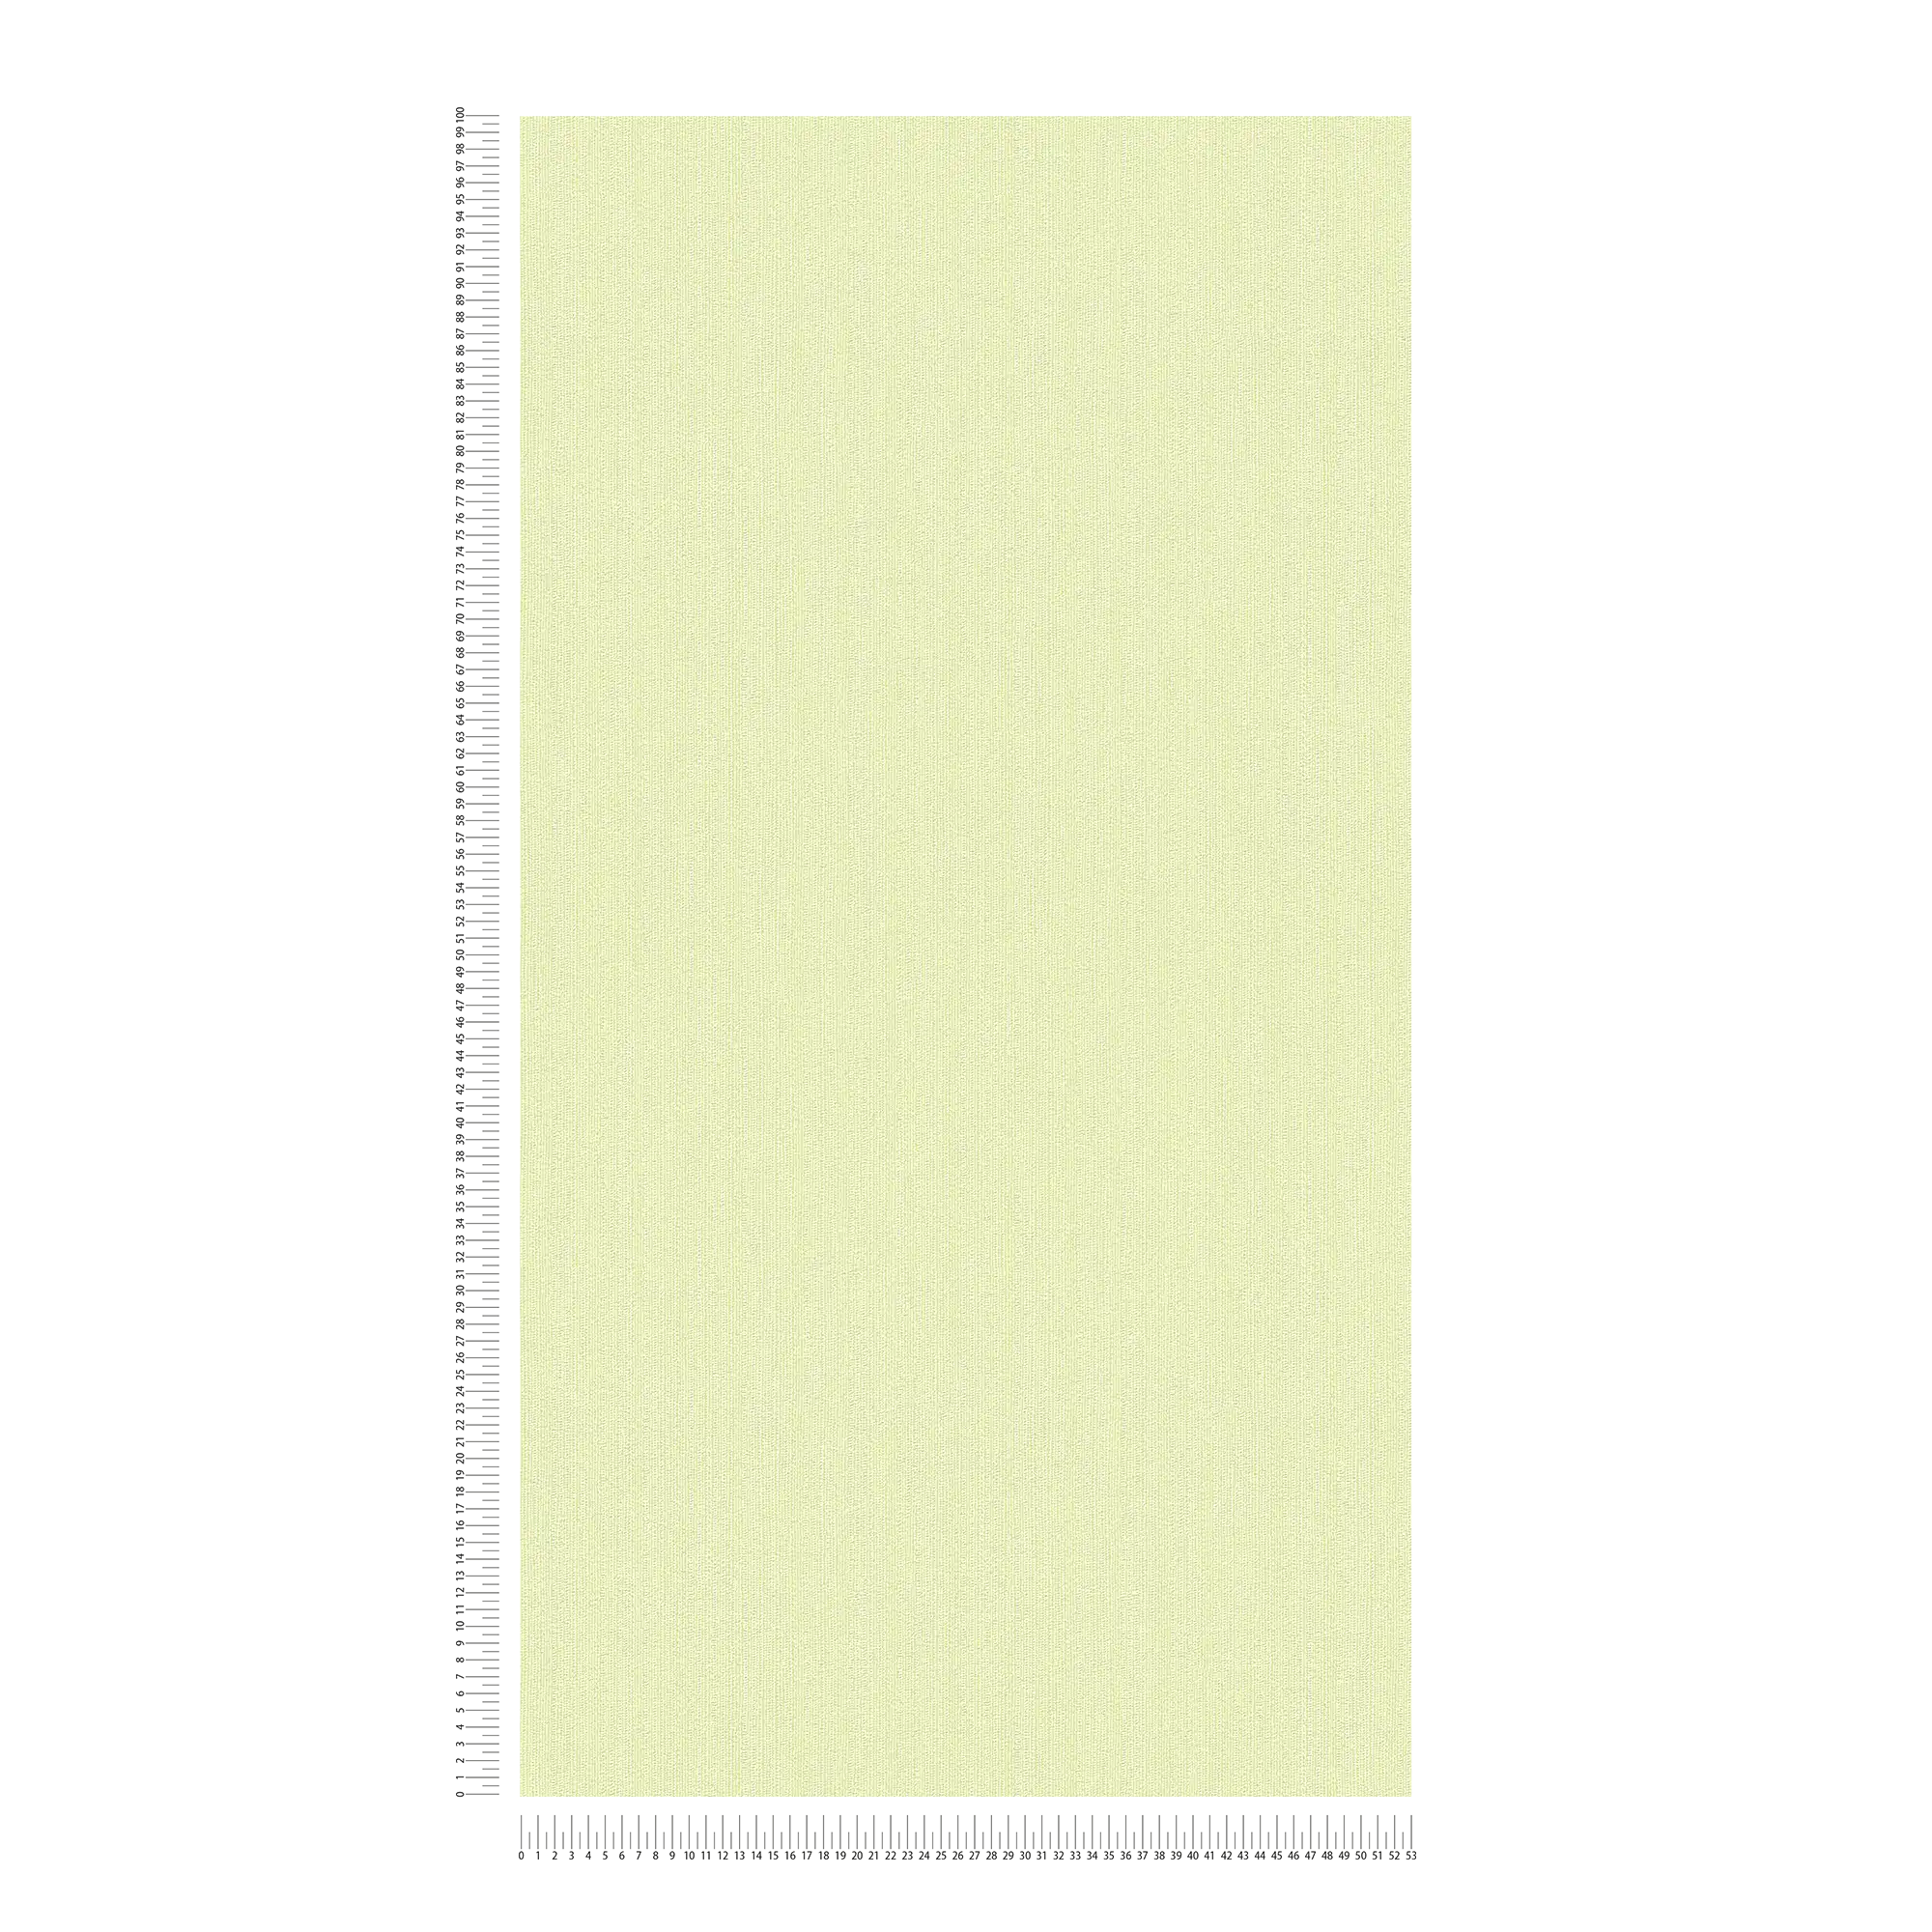             Papier peint intissé vert avec motifs structurés discrets
        